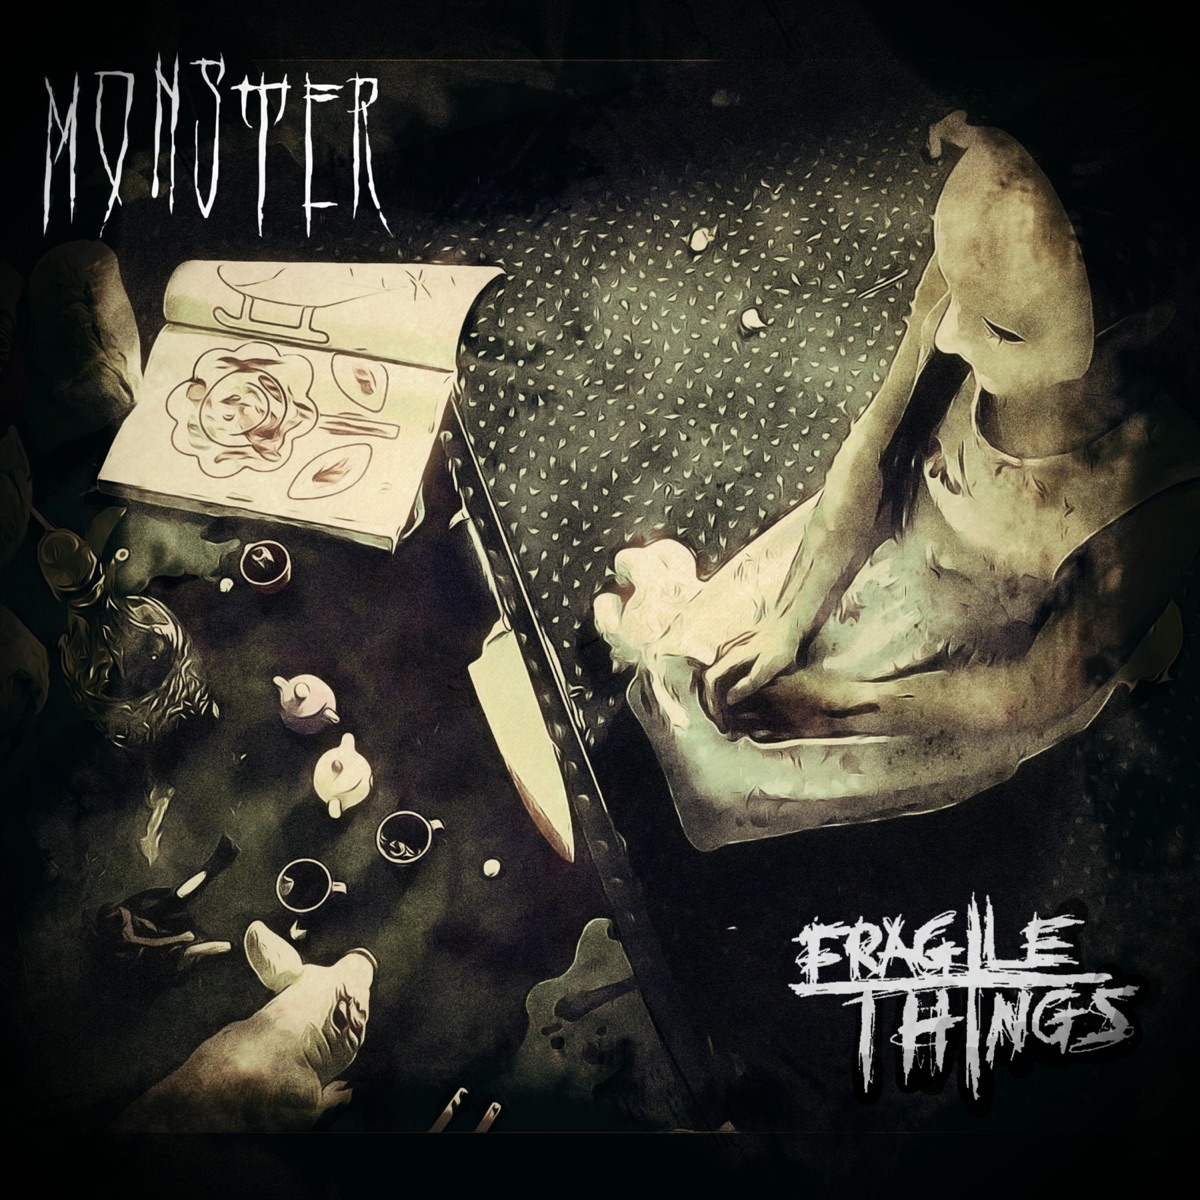 Monster - Single - Album by Fragile Things - Apple Music